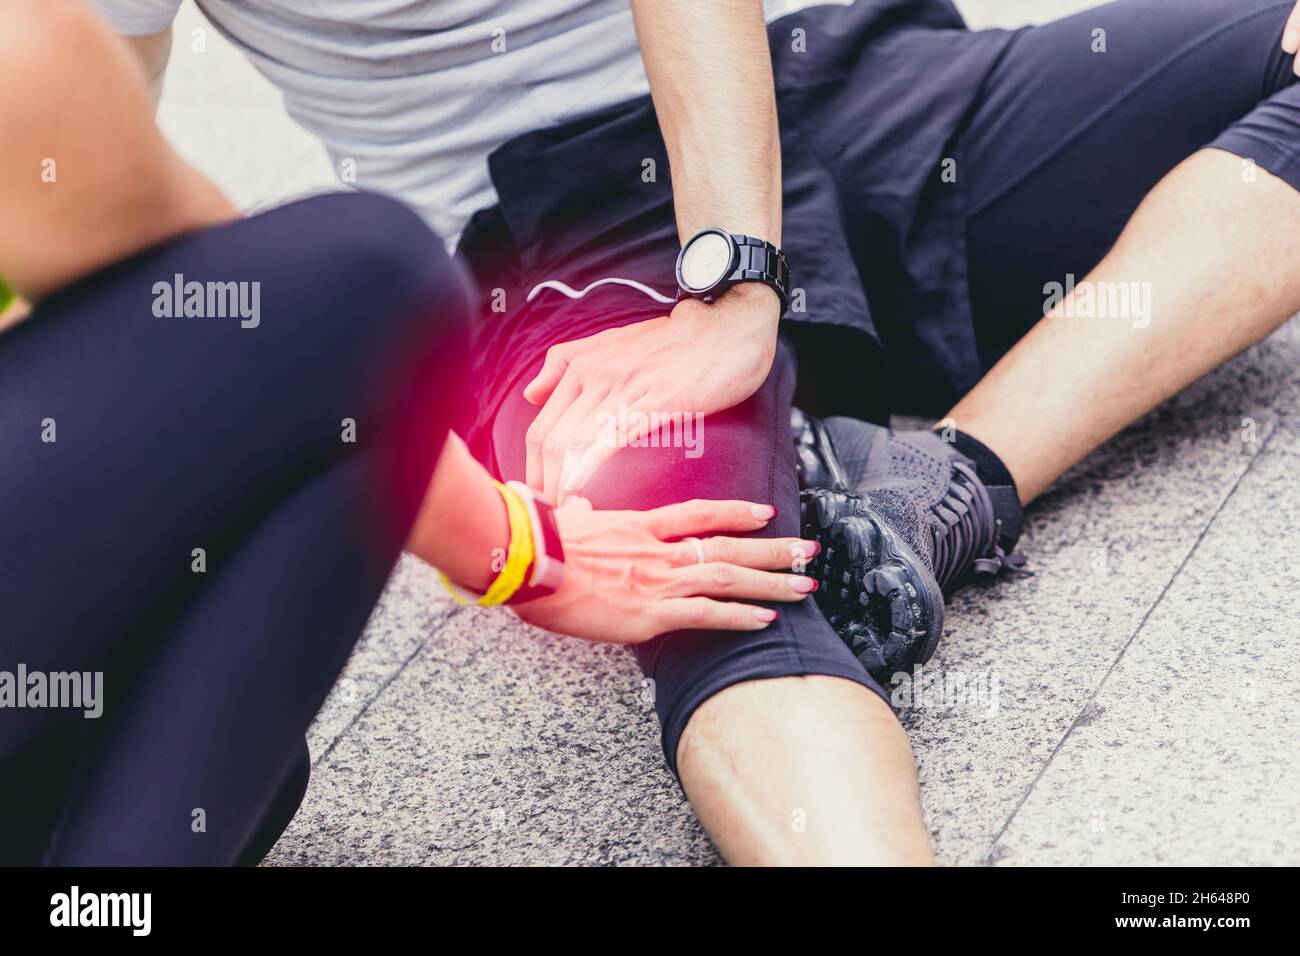 Sportathlet Menschen Knieverletzung durch Kraftbiegen oder Verdrehen während des Trainings oder Laufen Stockfoto